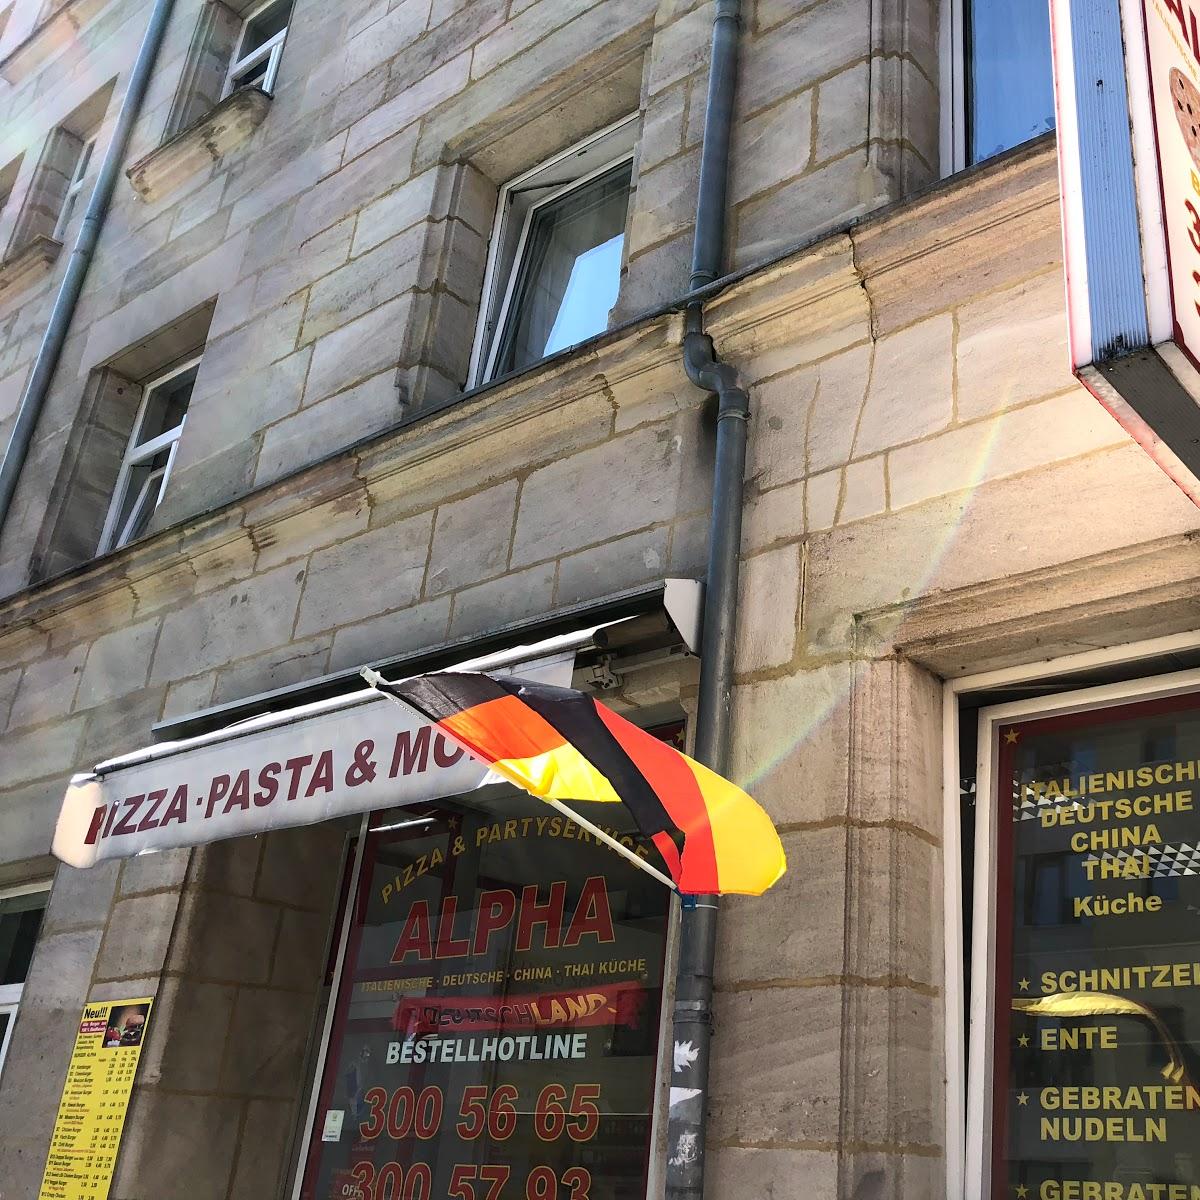 Restaurant "ALPHA | Pizza, Pasta & more" in Nürnberg